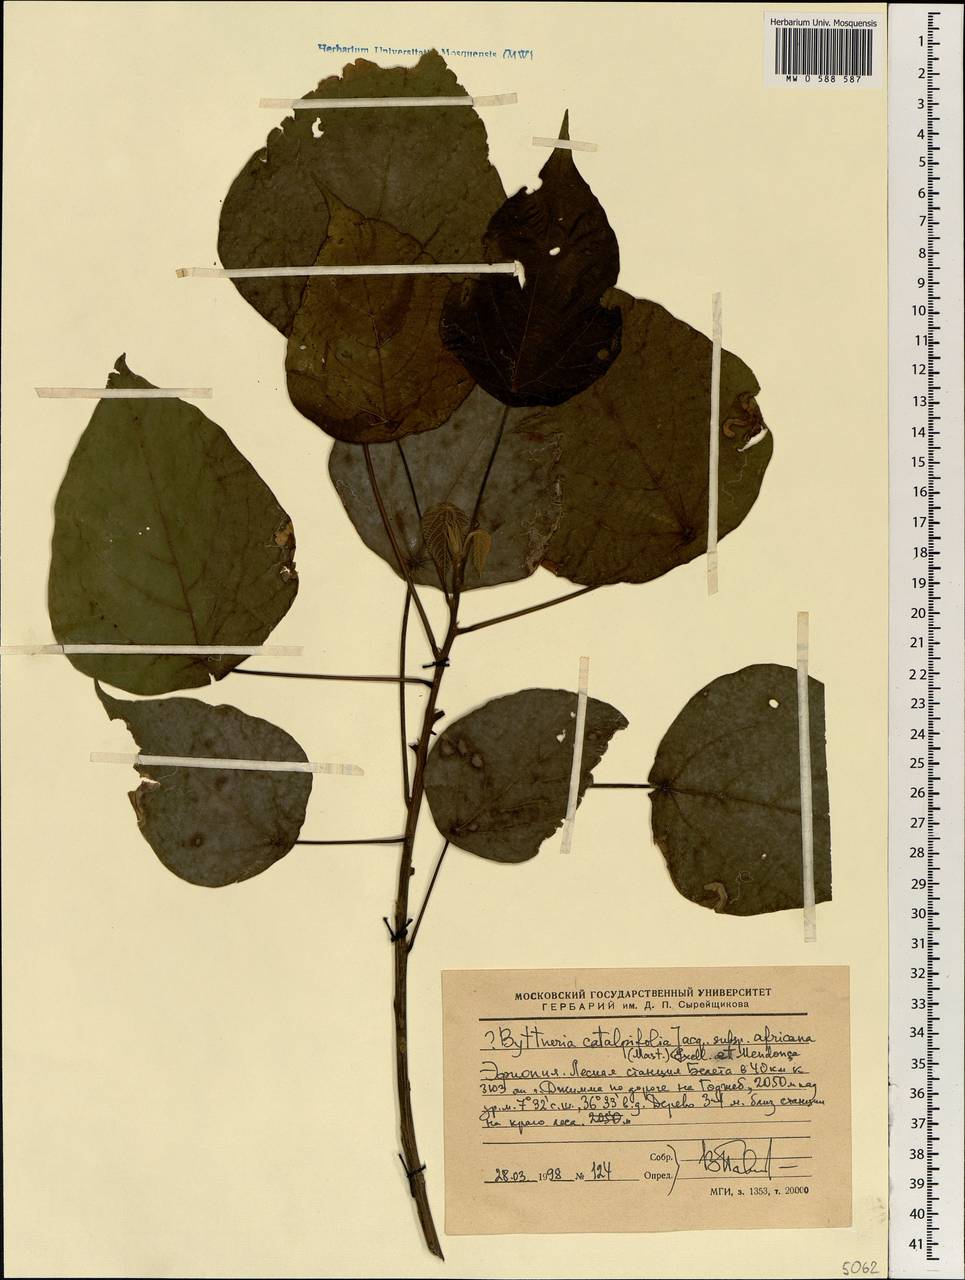 Byttneria catalpifolia subsp. africana (Mast.) Exell & Mend., Africa (AFR) (Ethiopia)